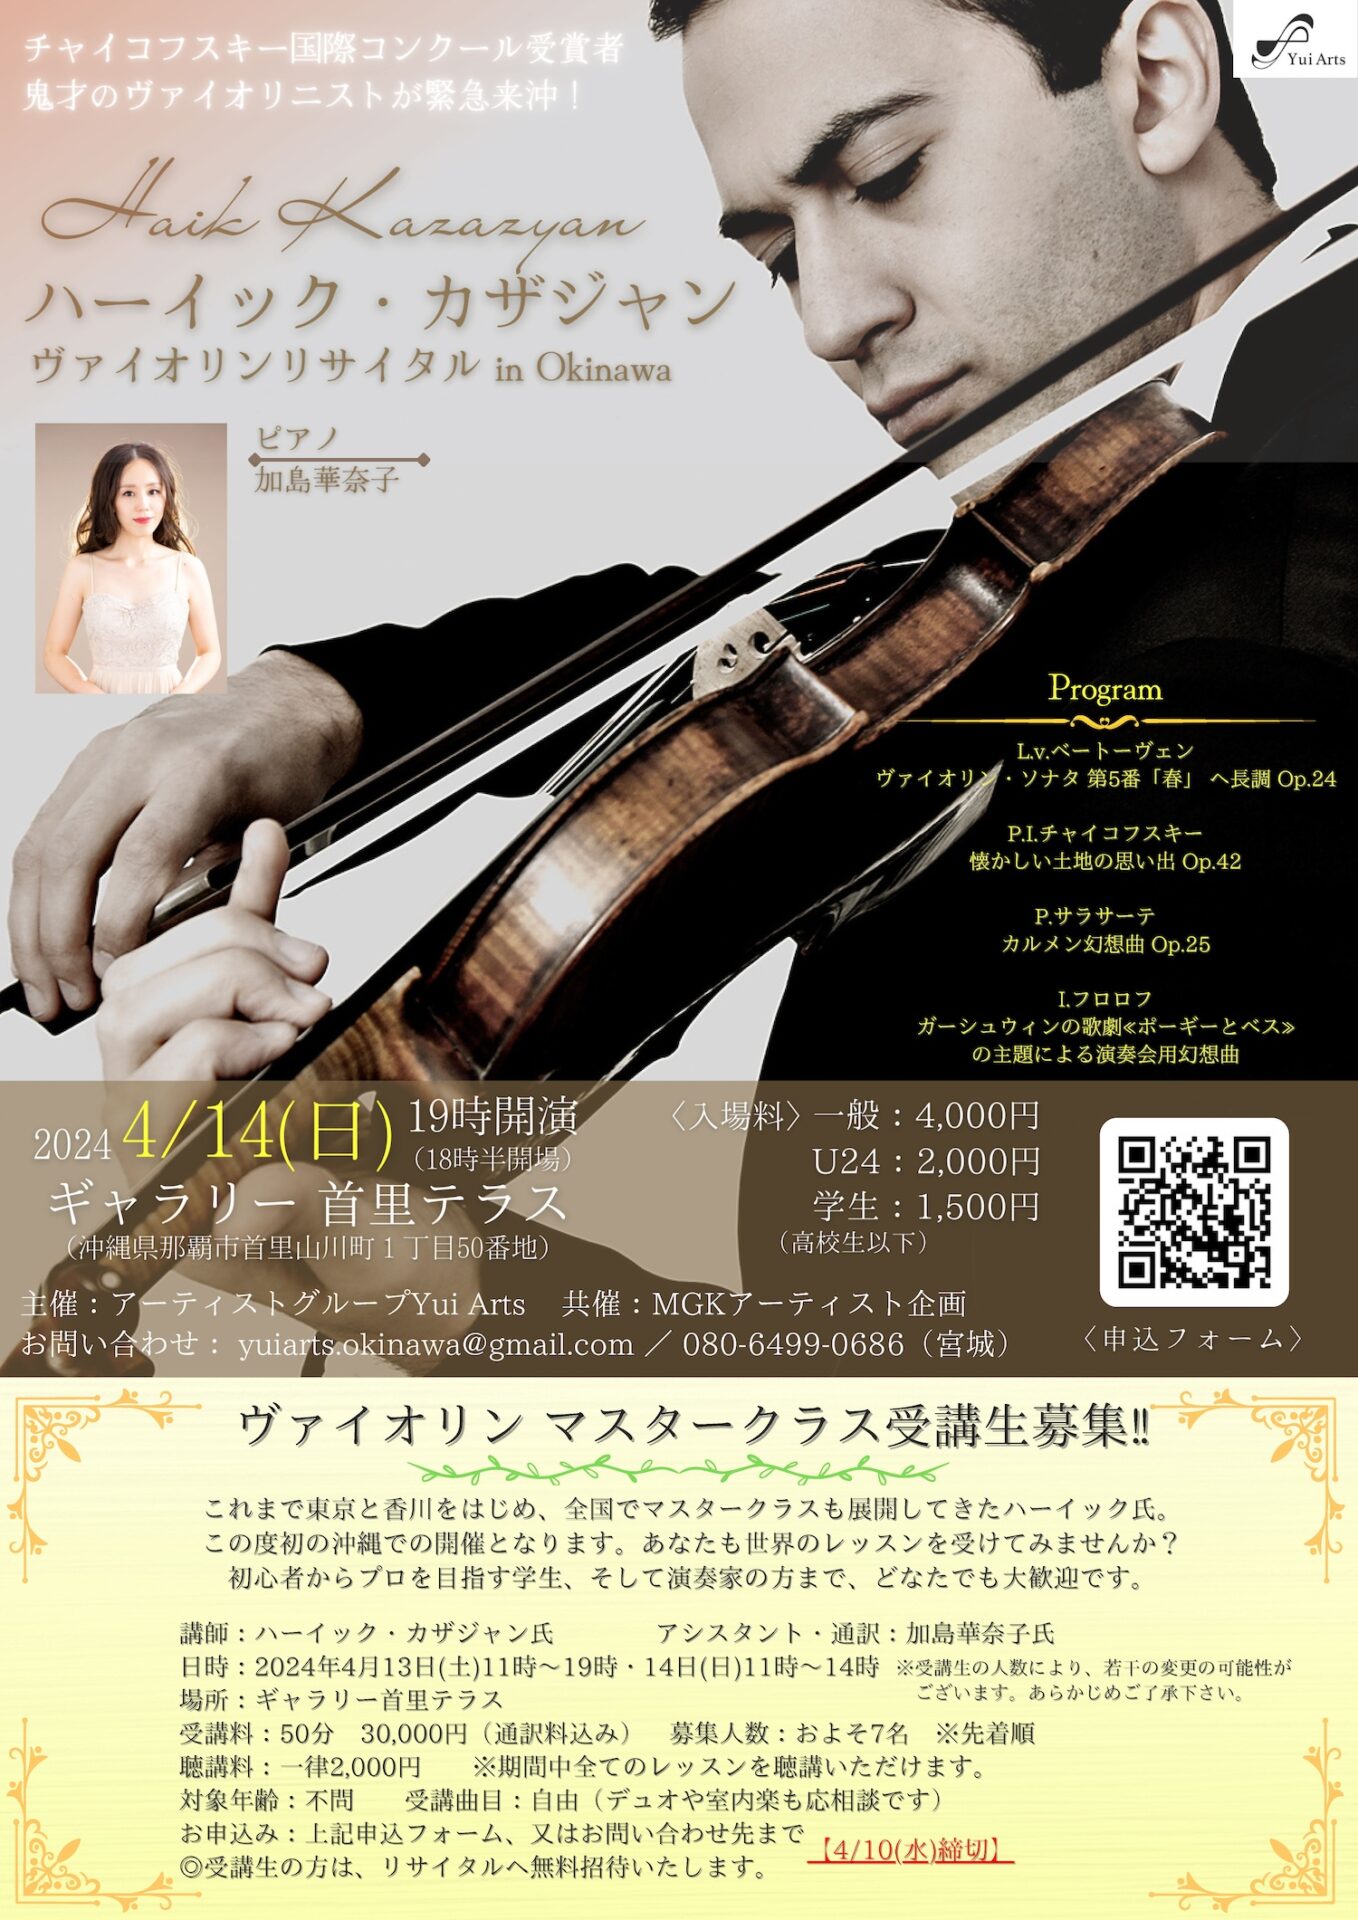 ハーイック・カザジャン ヴァイオリンリサイタル in Okinawa